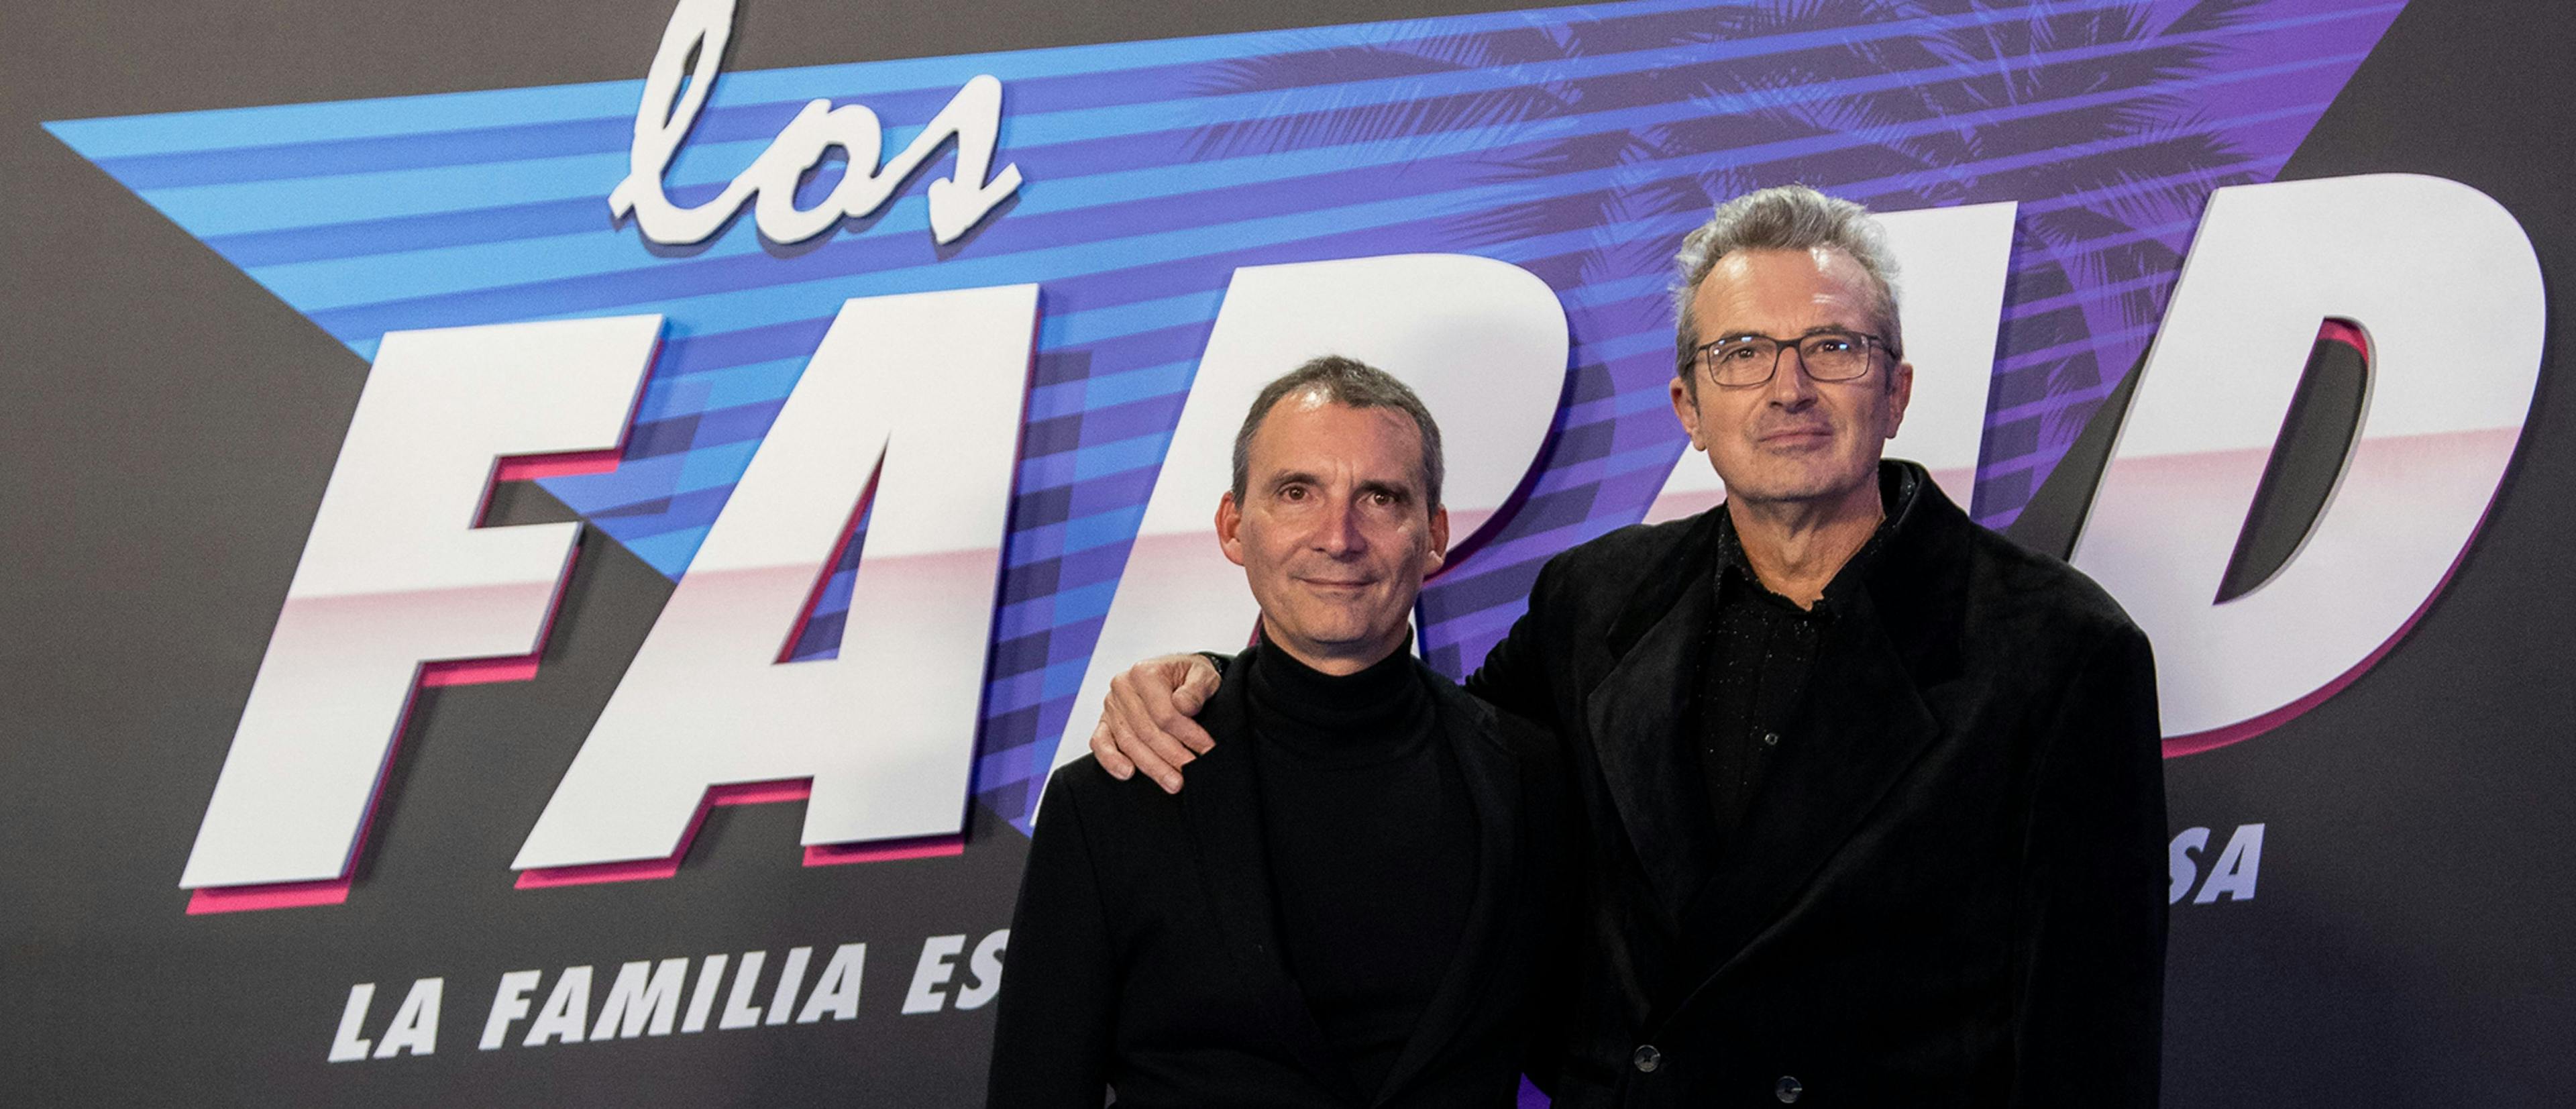 Alejandro Hernández y Mariano Barroso, creadores de la serie 'Los Farad', en la presentación en Madrid